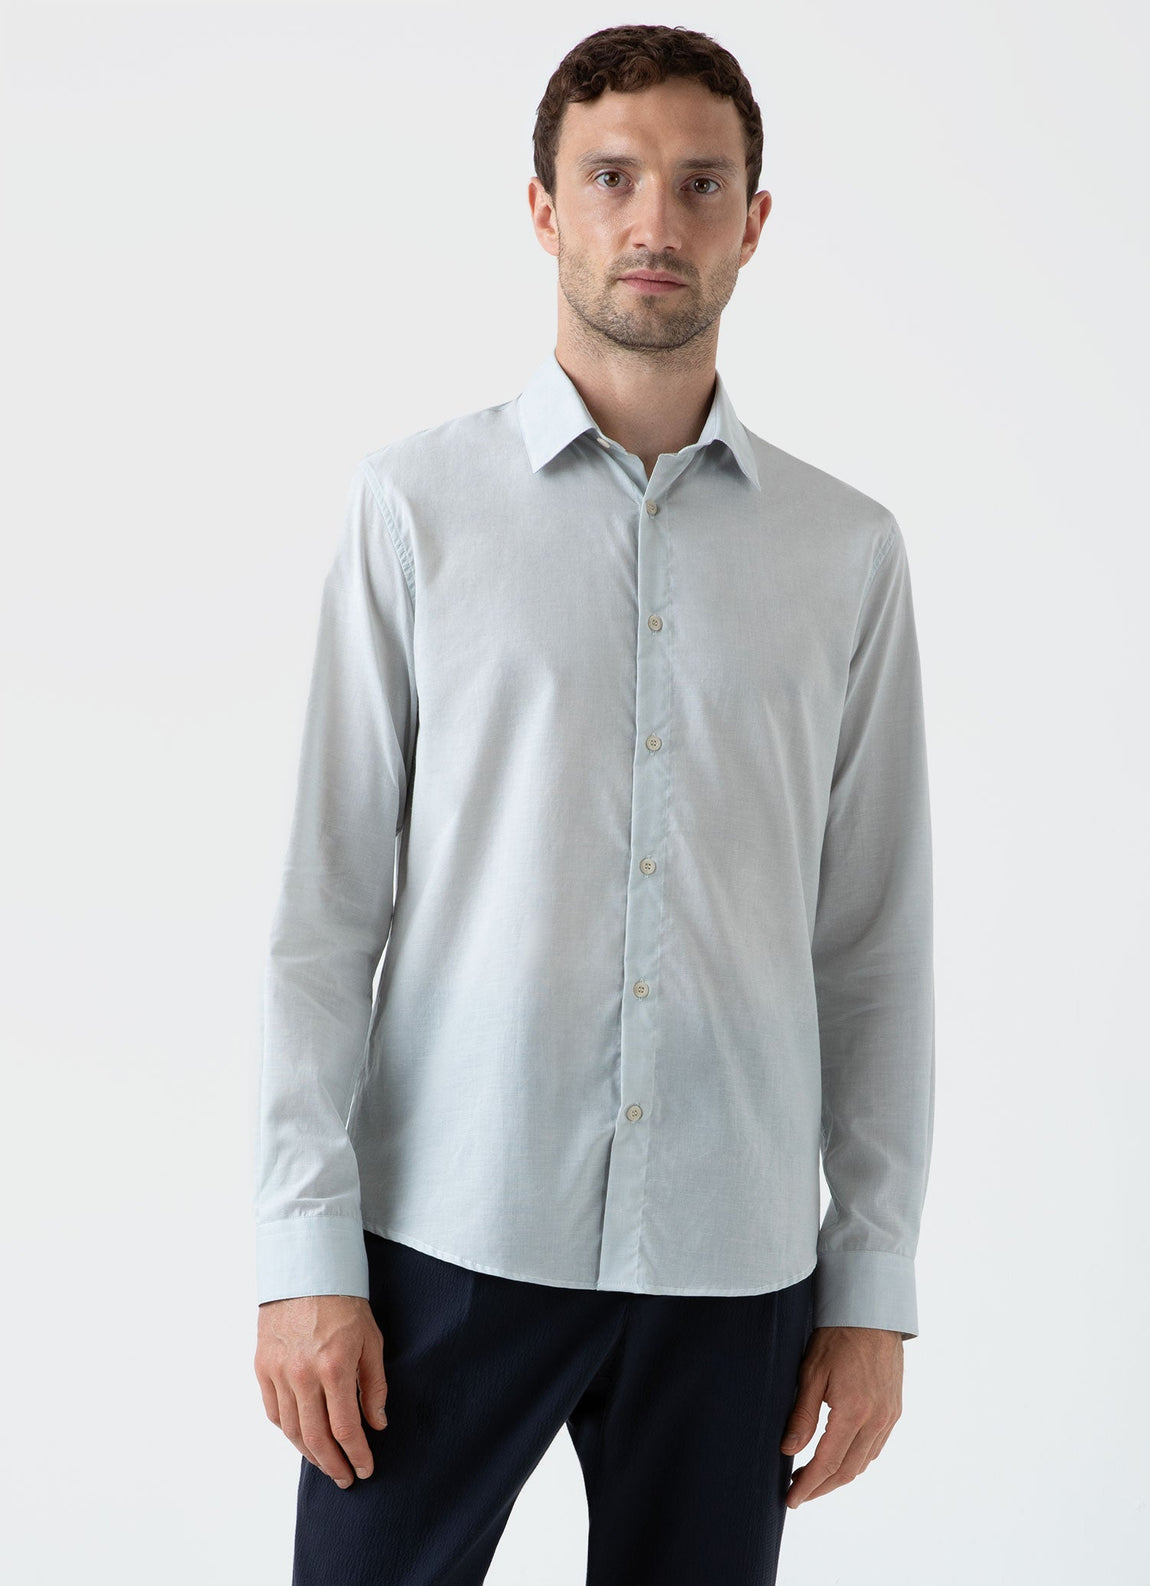 Men's Cotton Cashmere Shirt in Light Blue